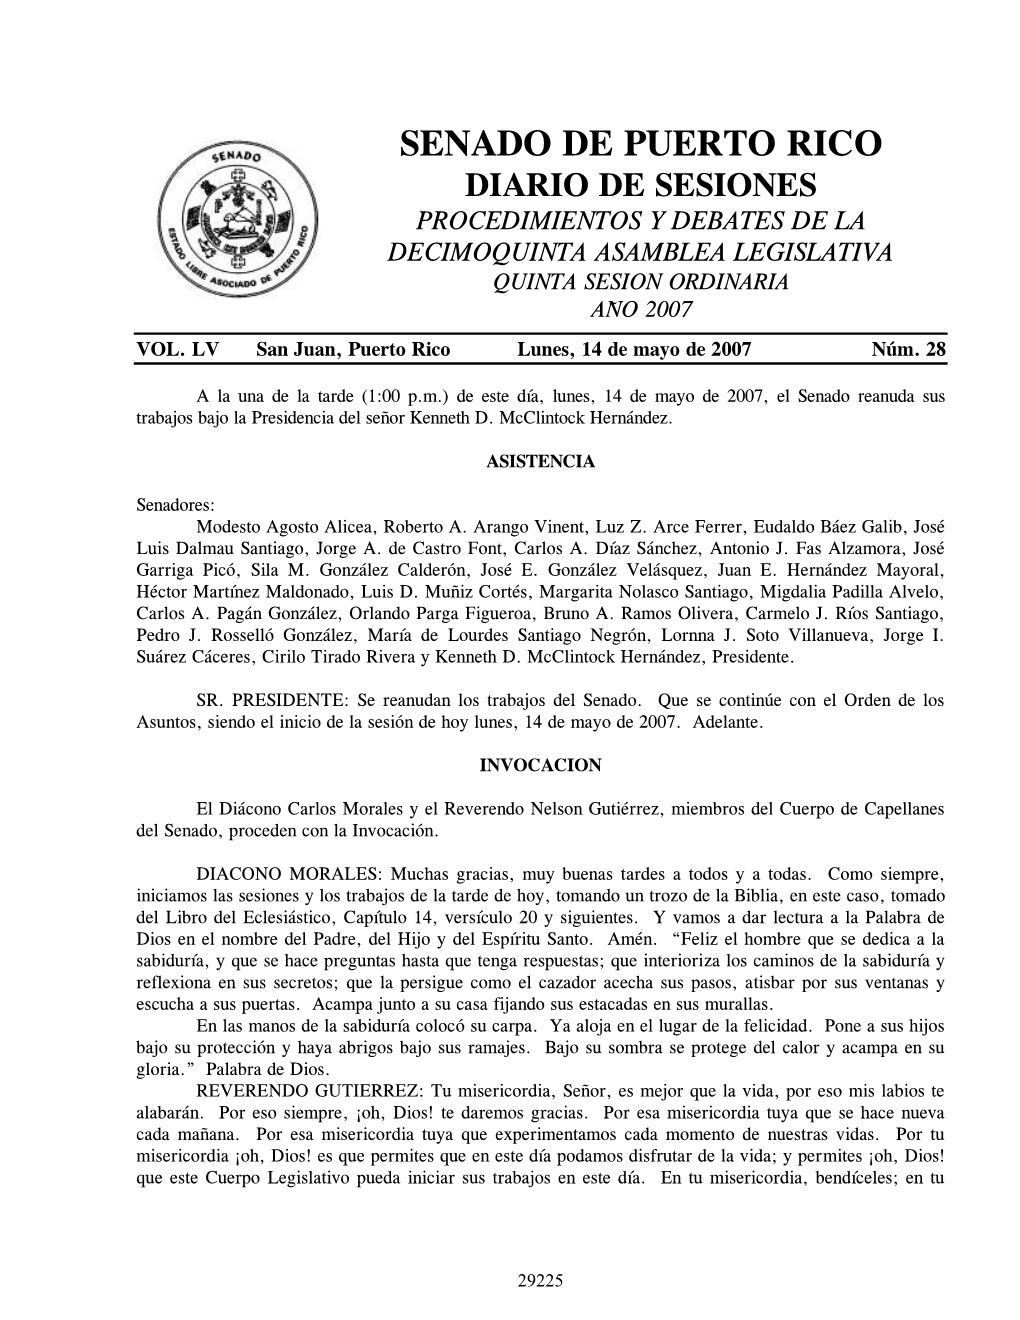 Senado De Puerto Rico Diario De Sesiones Procedimientos Y Debates De La Decimoquinta Asamblea Legislativa Quinta Sesion Ordinaria Año 2007 Vol